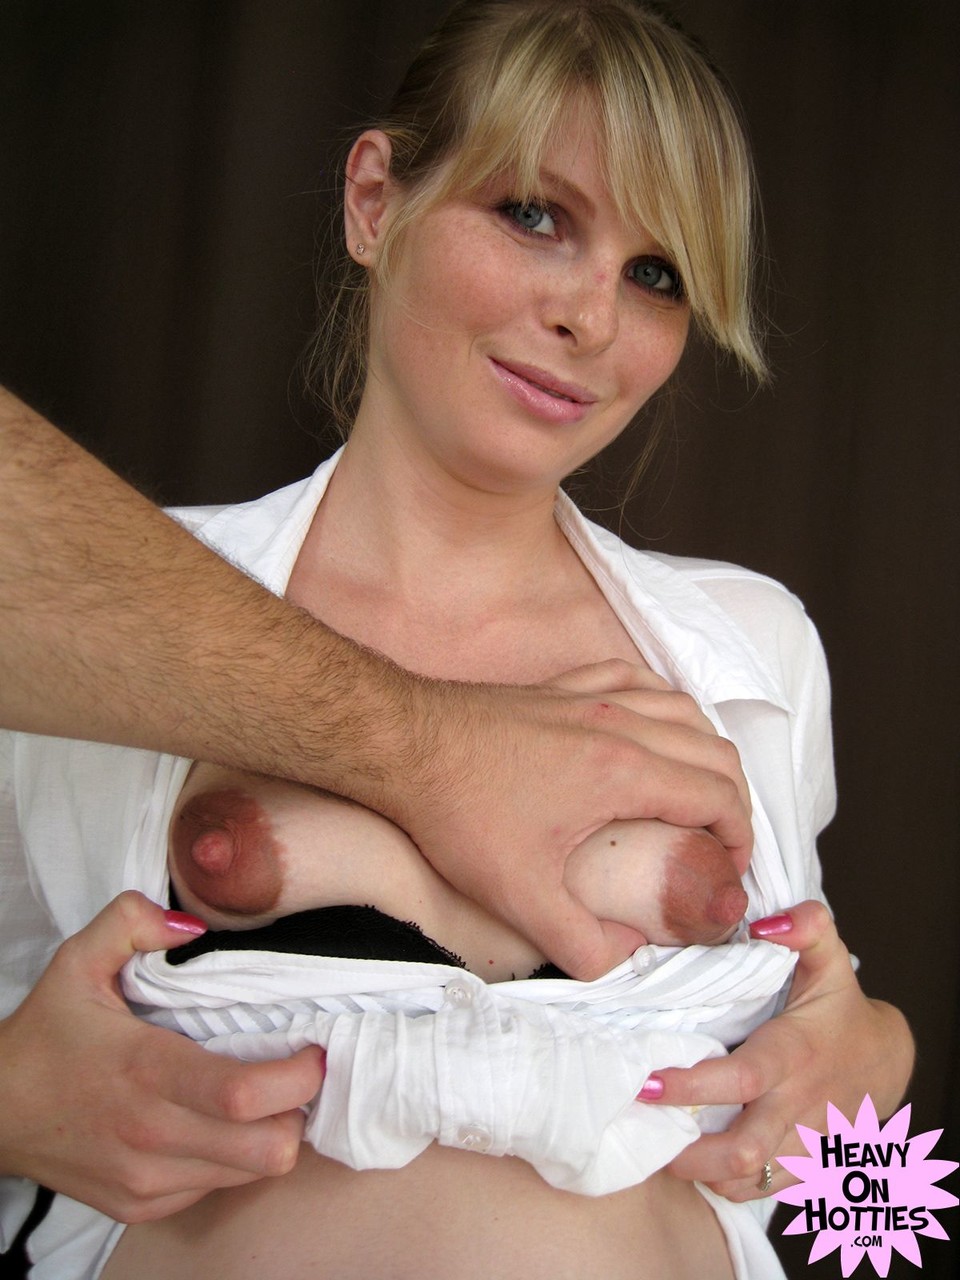 Sweet pregnant Ukrainian Wiska milks her big tits and gives a blowjob порно фото #428635793